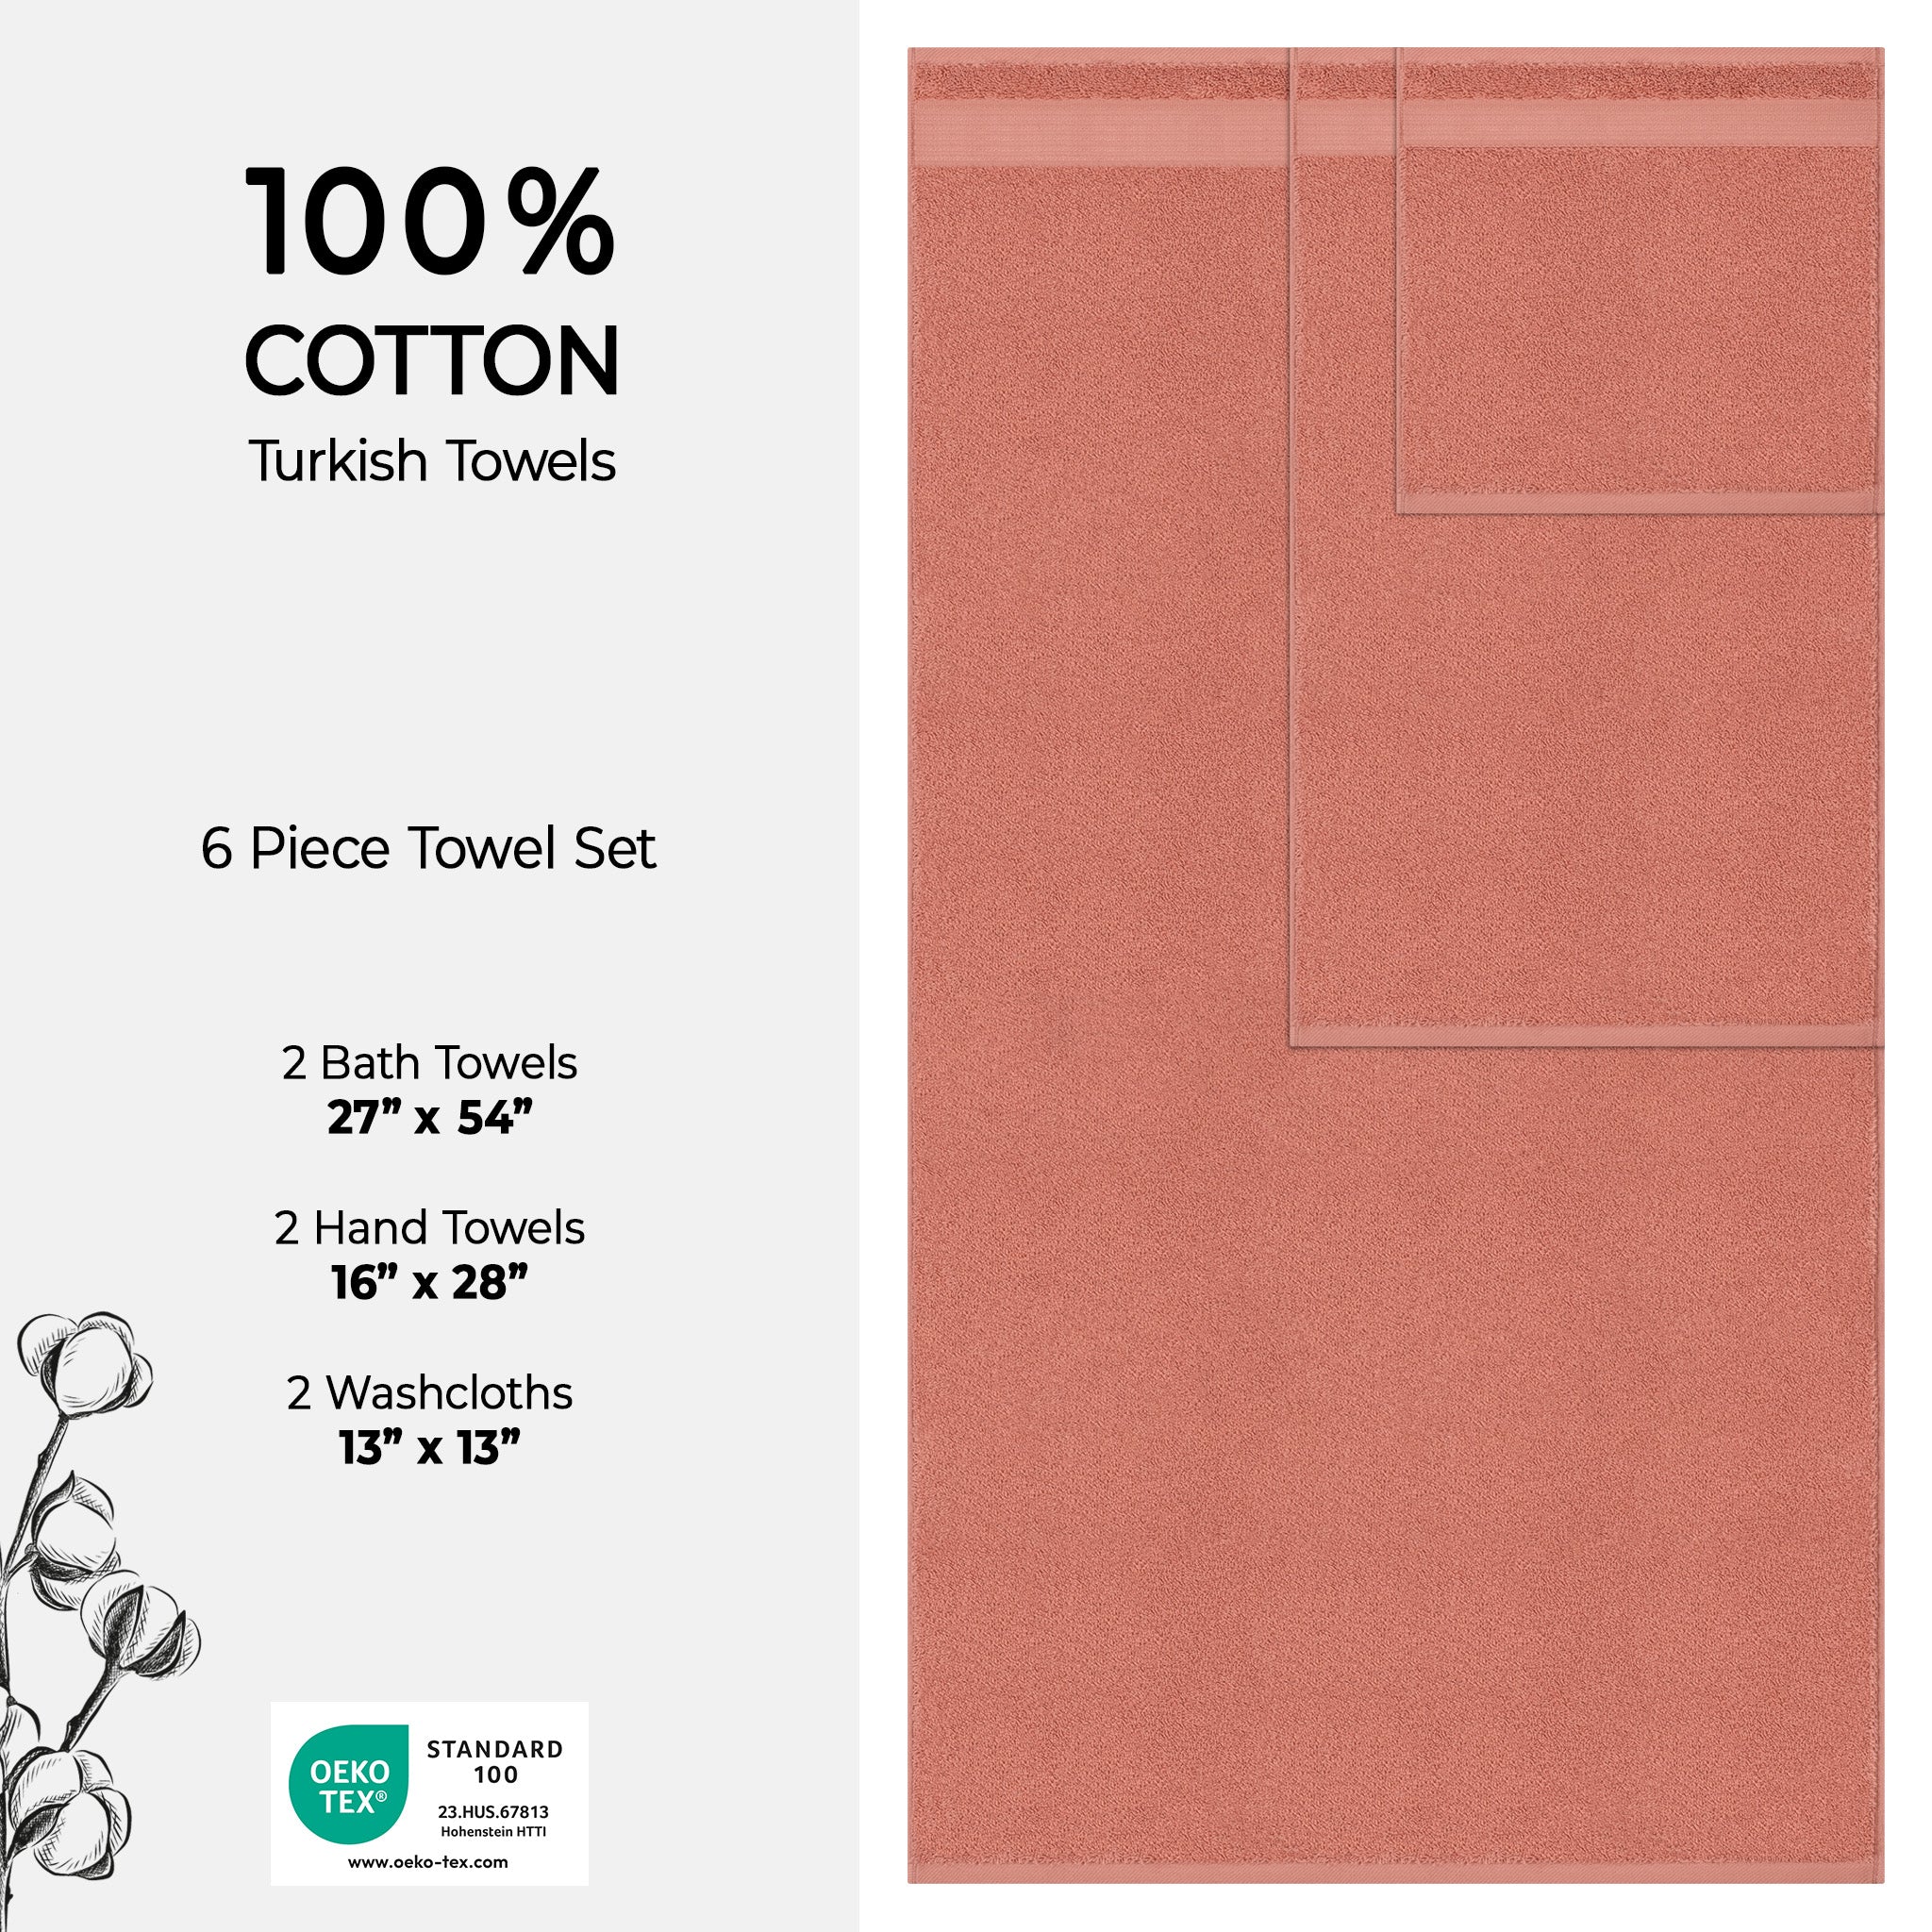 American Soft Linen Bekos 100% Cotton Turkish Towels 6 Piece Bath Towel Set -coral-04